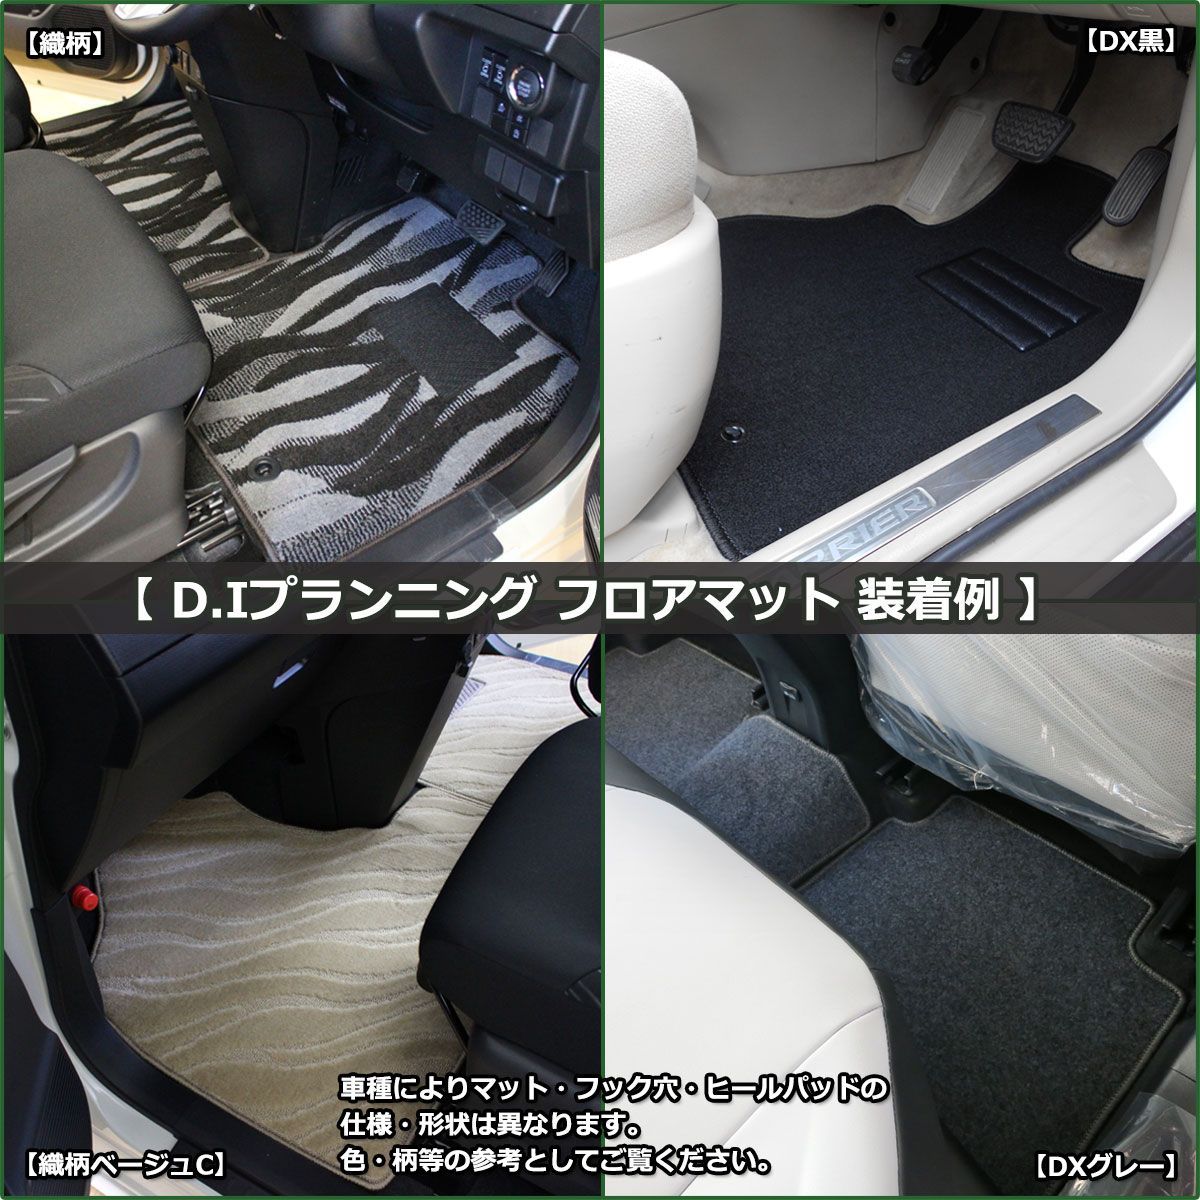 トヨタ ポルテ 10系 フロアマット カーマット DX黒 社外新品 カー用品のDIプランニング メルカリ